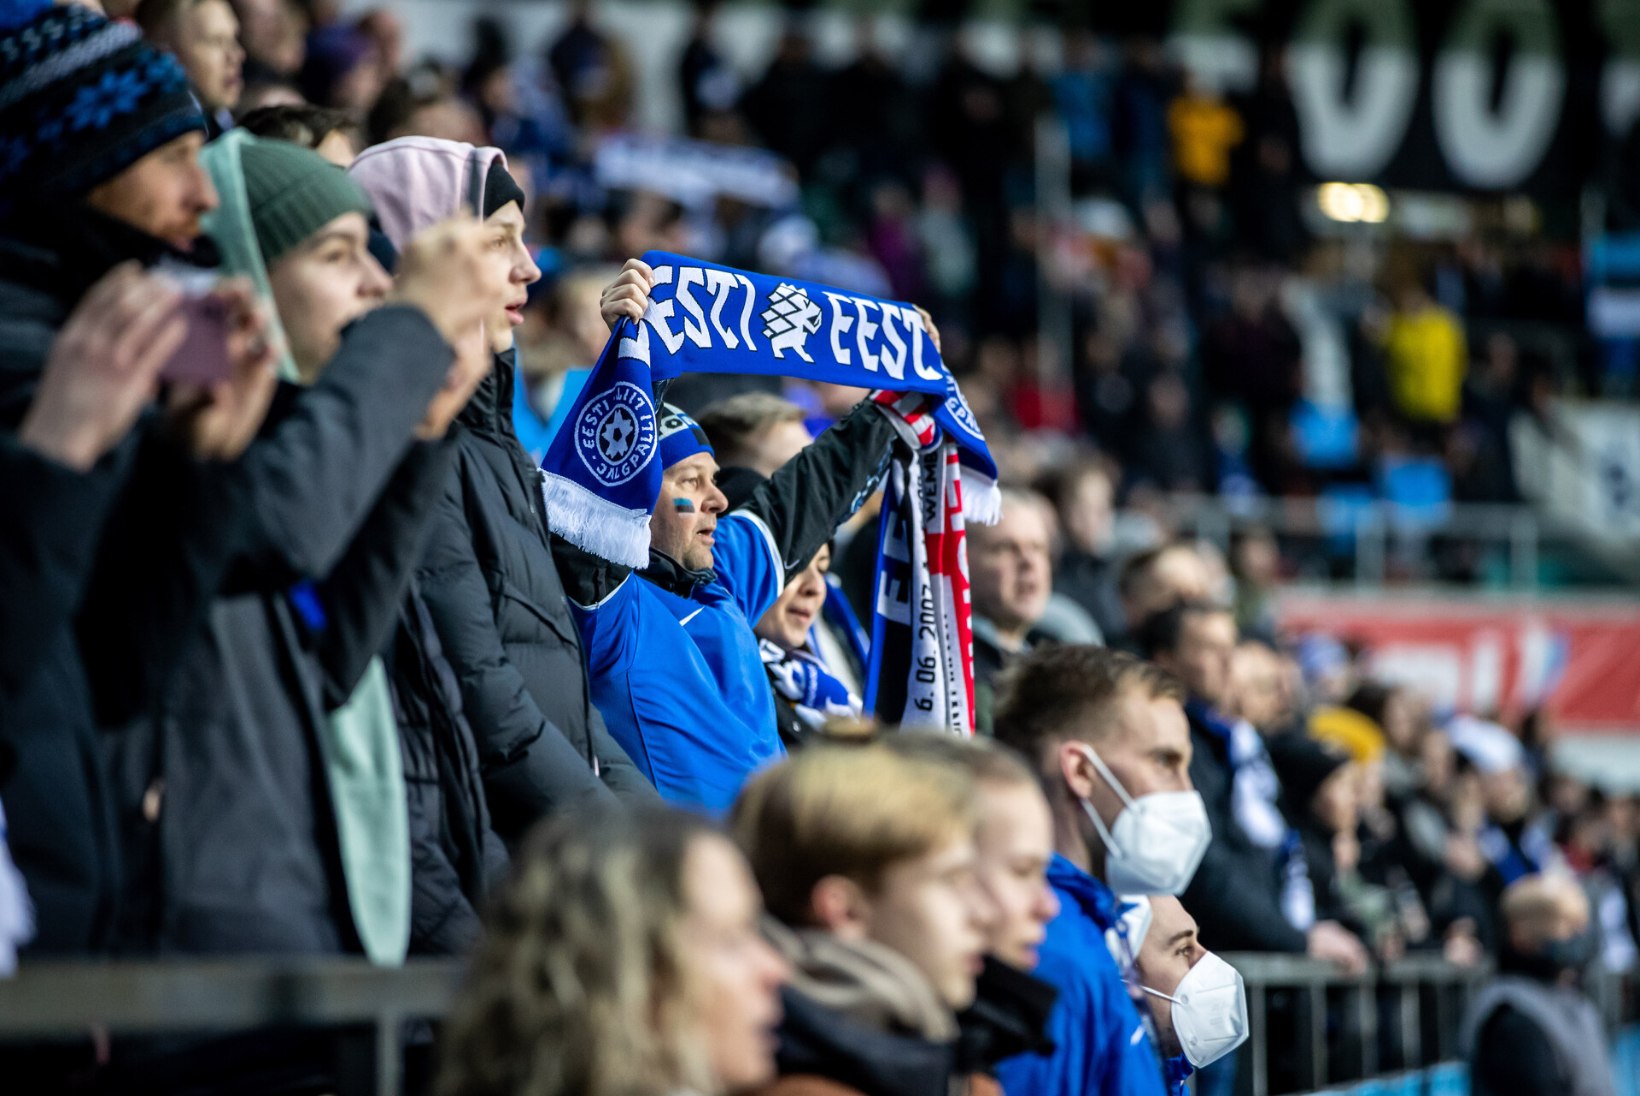 „KOLMAS POOLAEG“ | Staarfännide hinnang: Eesti jalgpall on nagu oma s*tt – näed, et haiseb, aga vaatad ikka